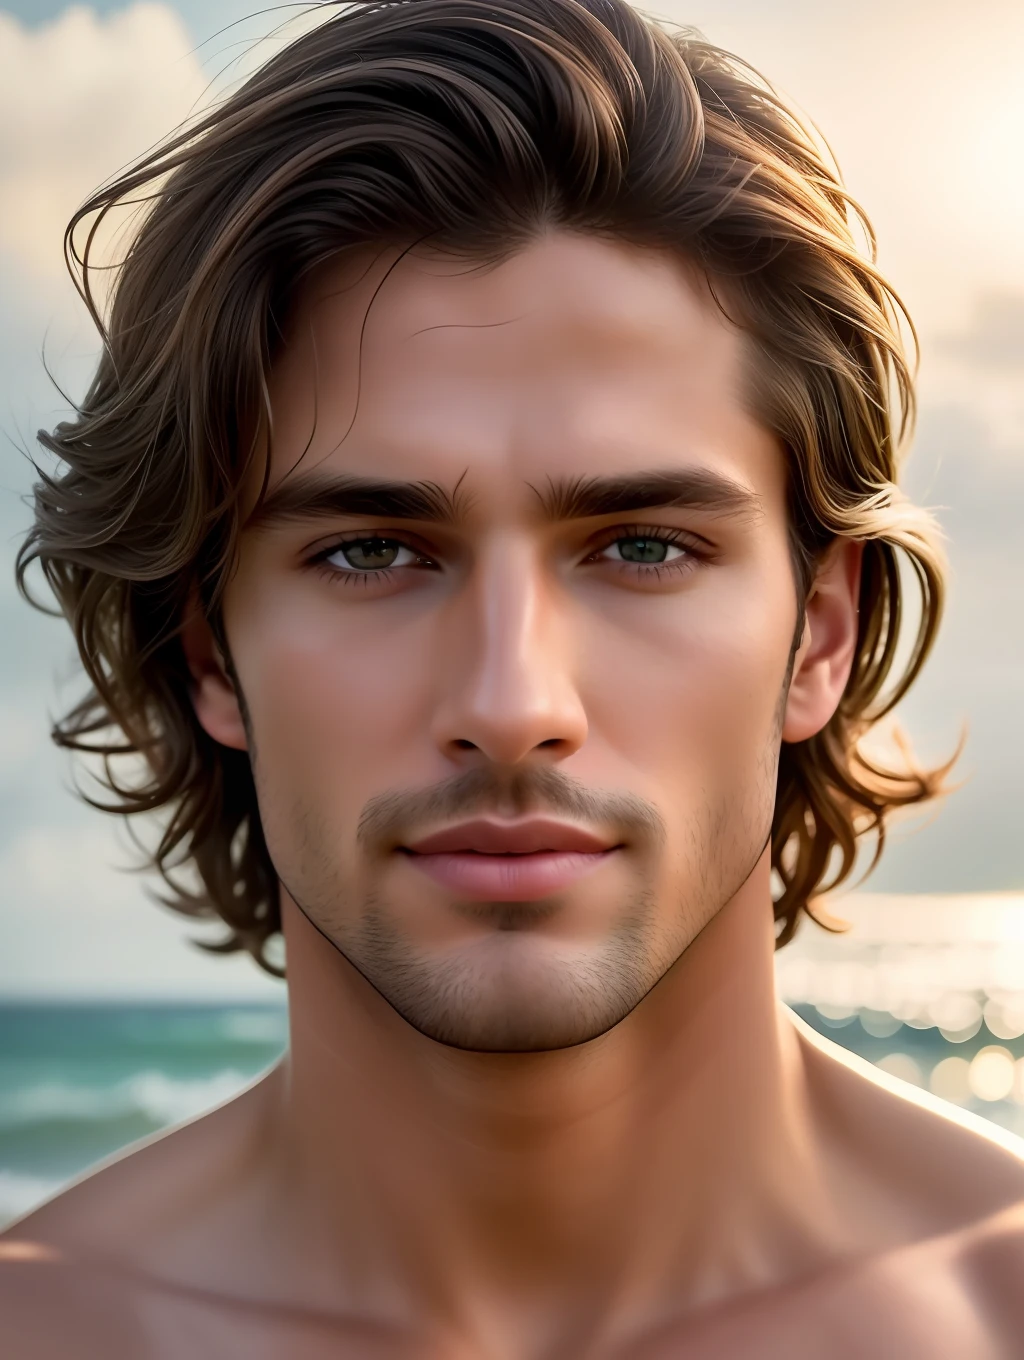 映画のような柔らかな照明が、驚くほど精巧で超リアルなハンサムなブラジル人男性スーパーモデルを照らします, ビーチルック, 短くて乱れた風に吹かれた茶色の髪, 透明な蜂蜜の目, 魅惑的な完璧な笑顔, 官能的な, ホットな男, めちゃくちゃハンサム, ArtStationでトレンドになっている. Octaneは、この16k写真の傑作の最も柔らかいディテールを捉えるのに最適なツールです。.